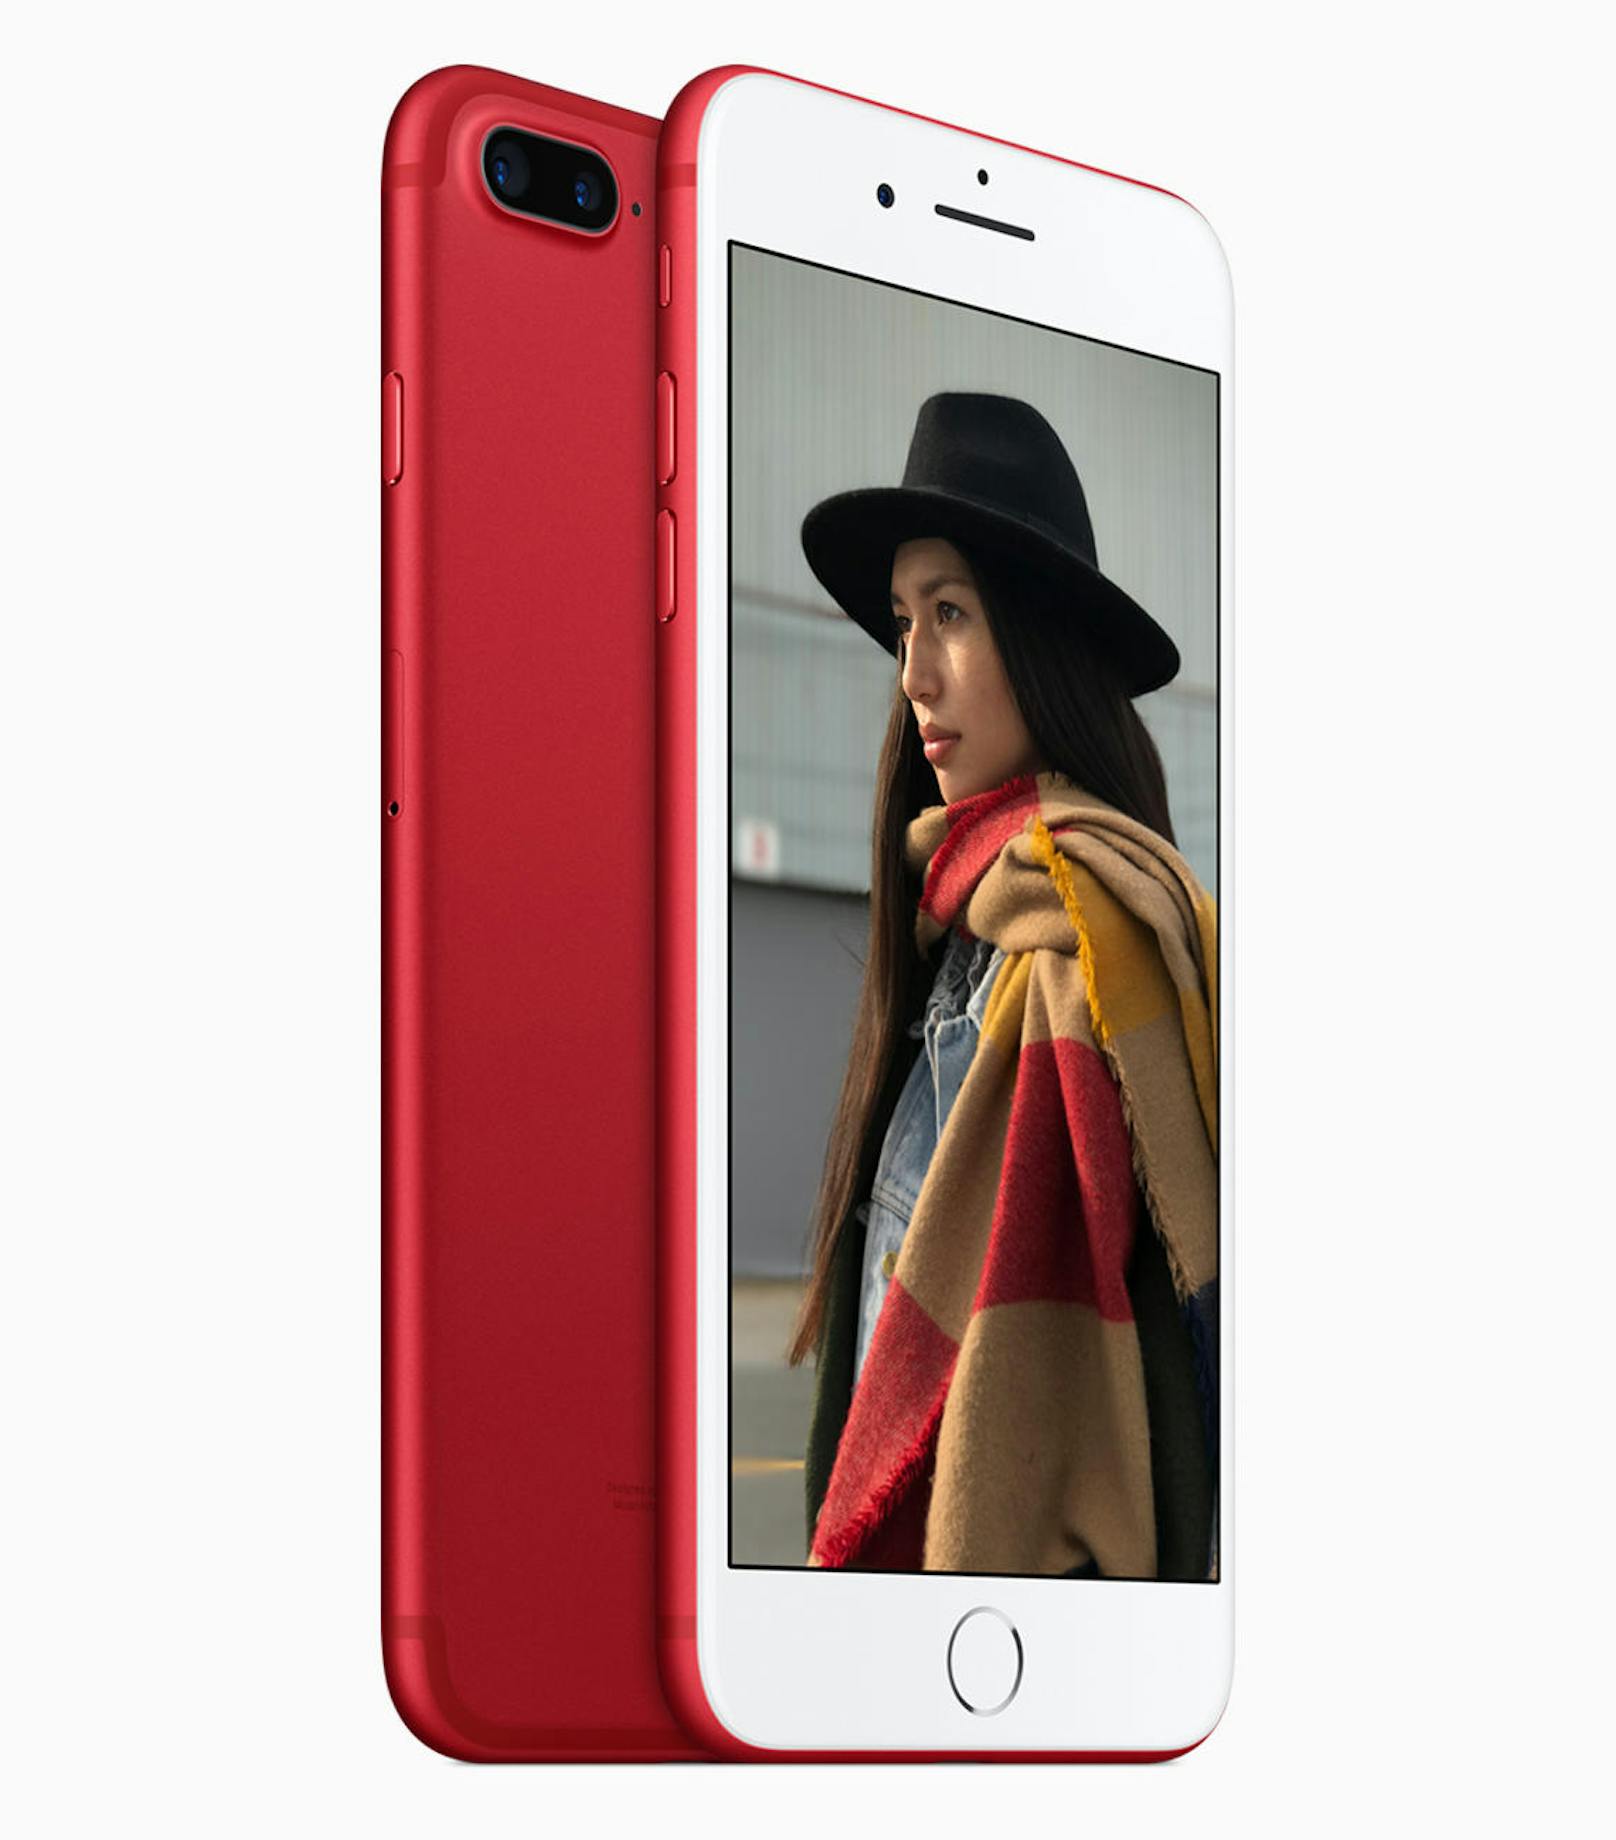 Das iPhone 7 Special Edition hat eine eigene Verkaufsseite und wird dementsprechend nicht als sechste Farboption des Geräts vermarktet. 2013 fügte Apple zu weiß und schwarz die Farboption Gold für das iPhone 5s hinzu und wechselte die Bezeichnung der dunklen Ausführung von Schwarz in Spacegrau.